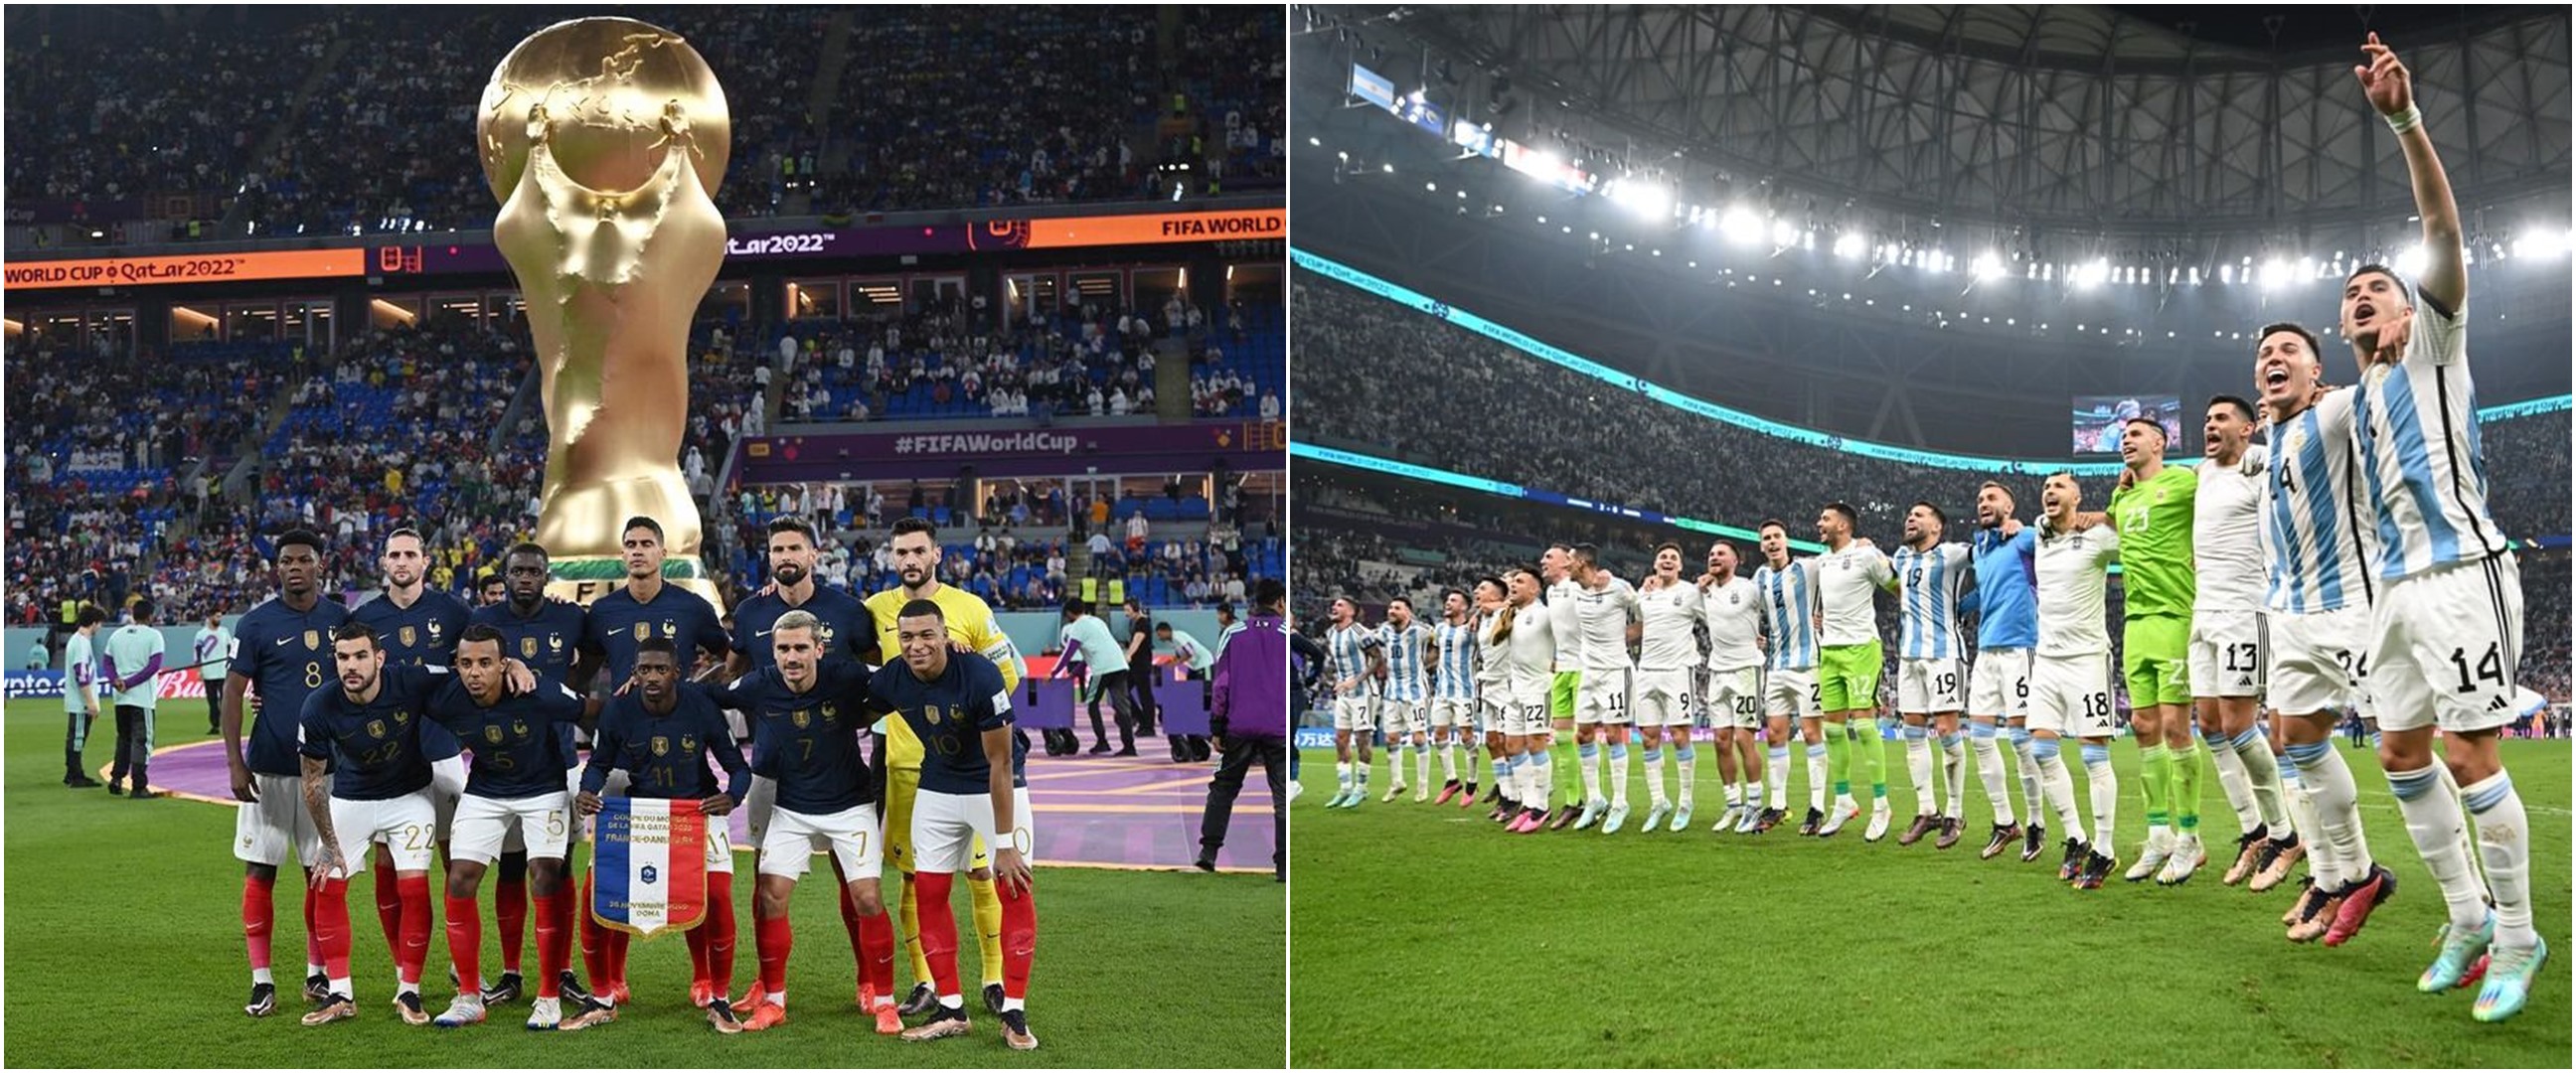 Argentina jago cetak gol cepat vs Prancis jago comeback, ini rekor pertemuan kedua tim jelang final